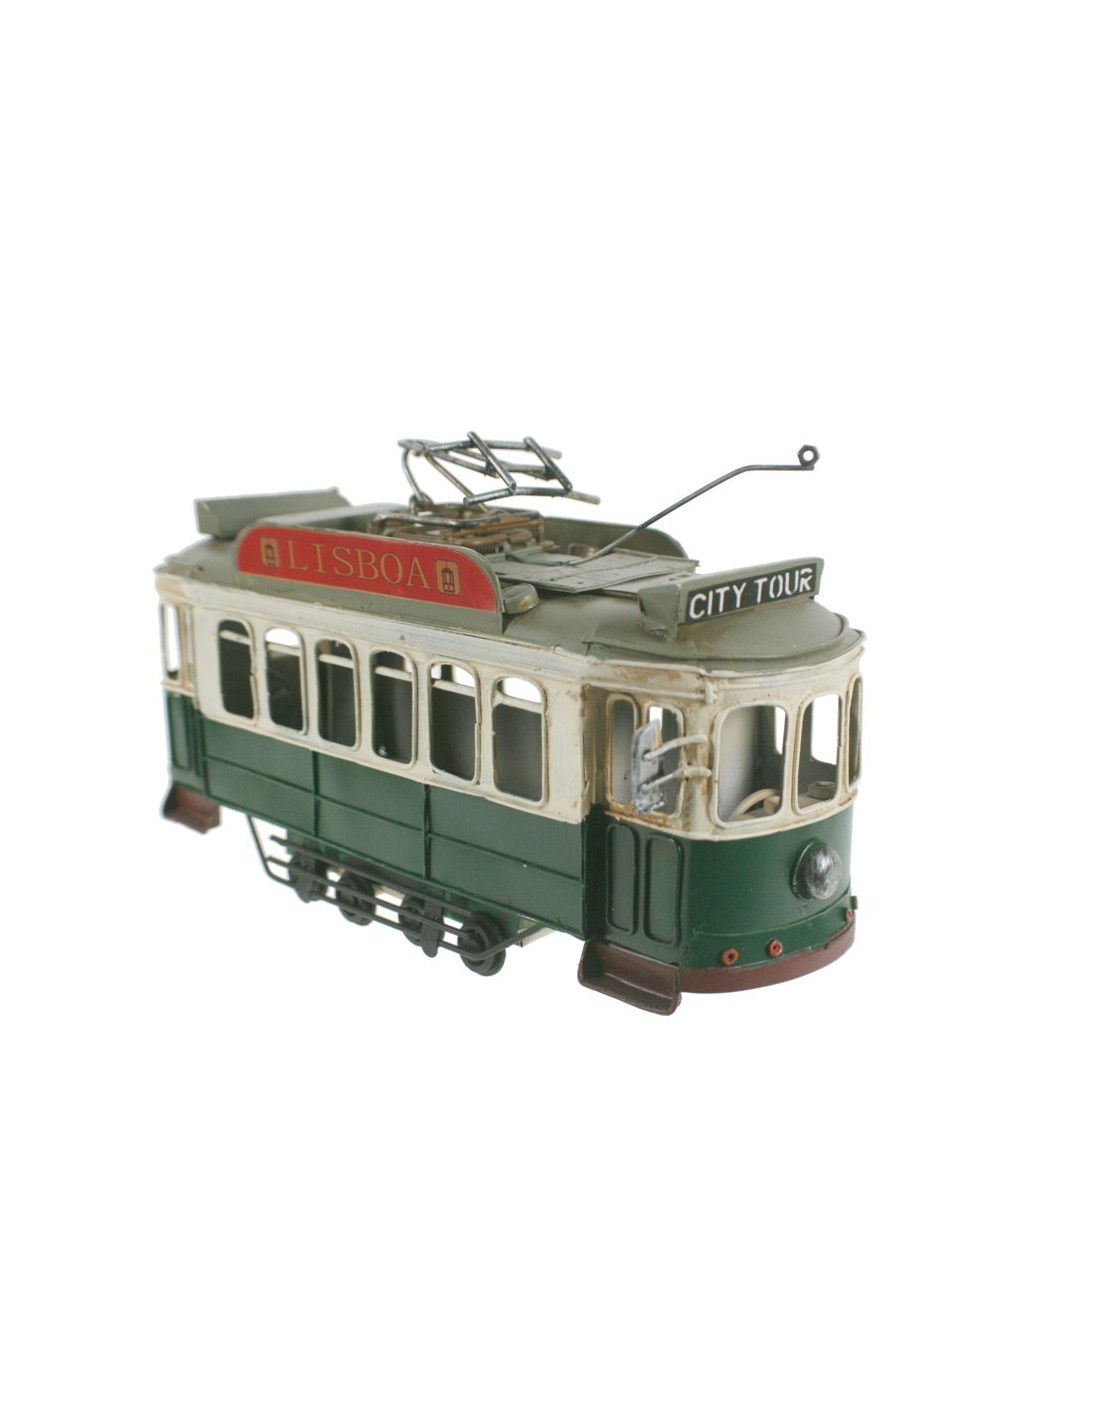 Tranvía replica retro color verde para coleccionables modelo Lisboa.